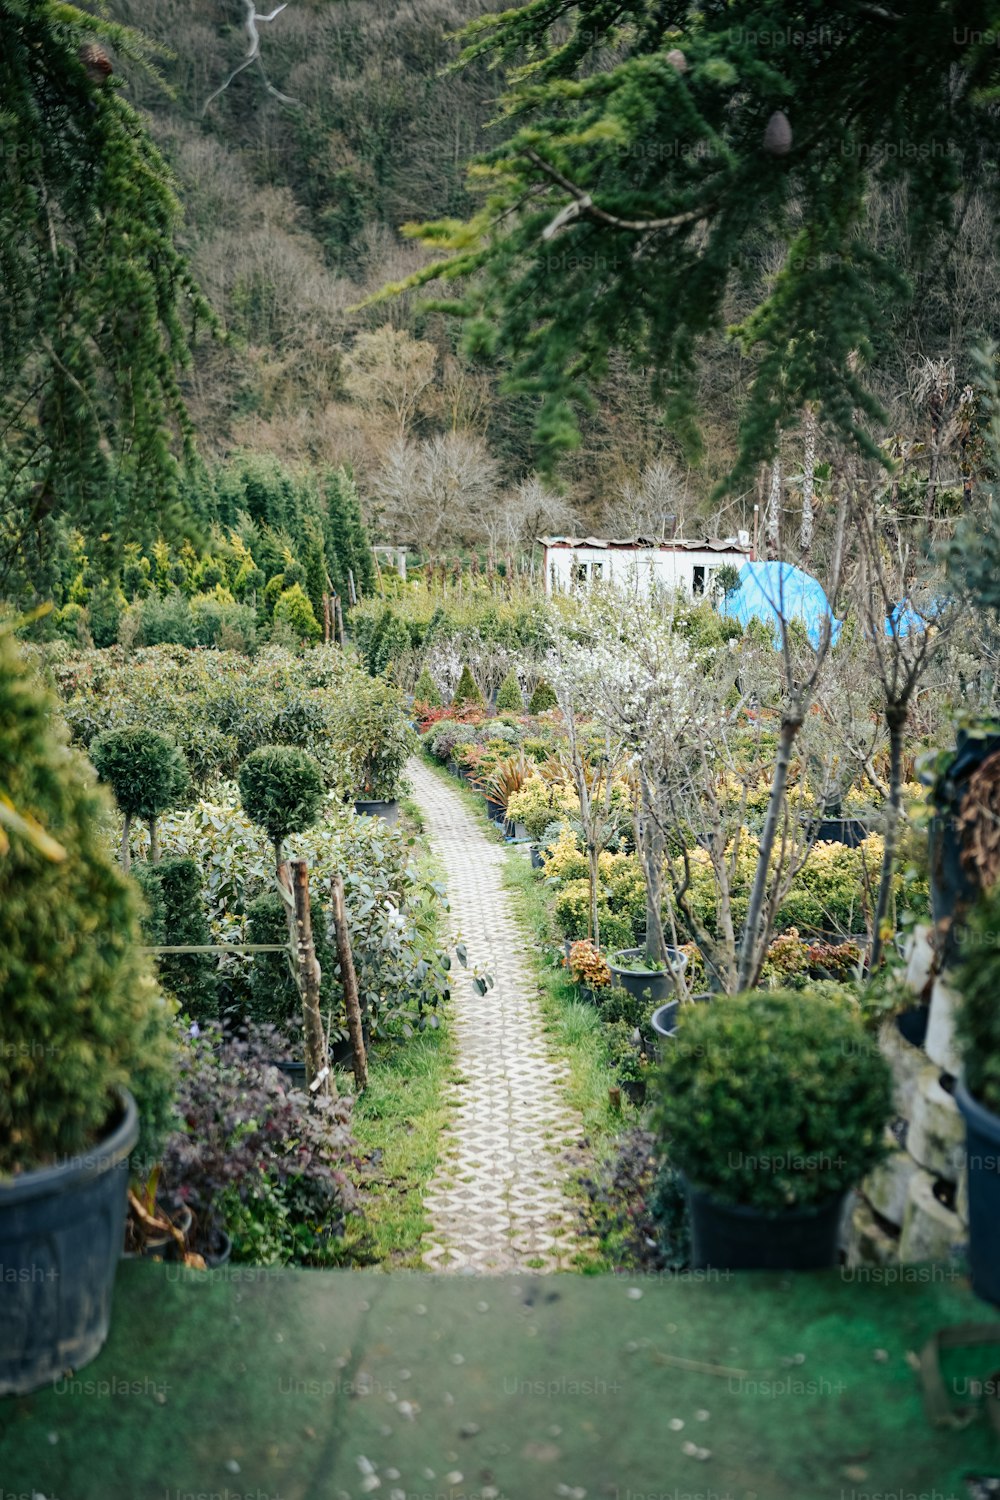 Un camino a trav�és de un jardín lleno de muchas plantas